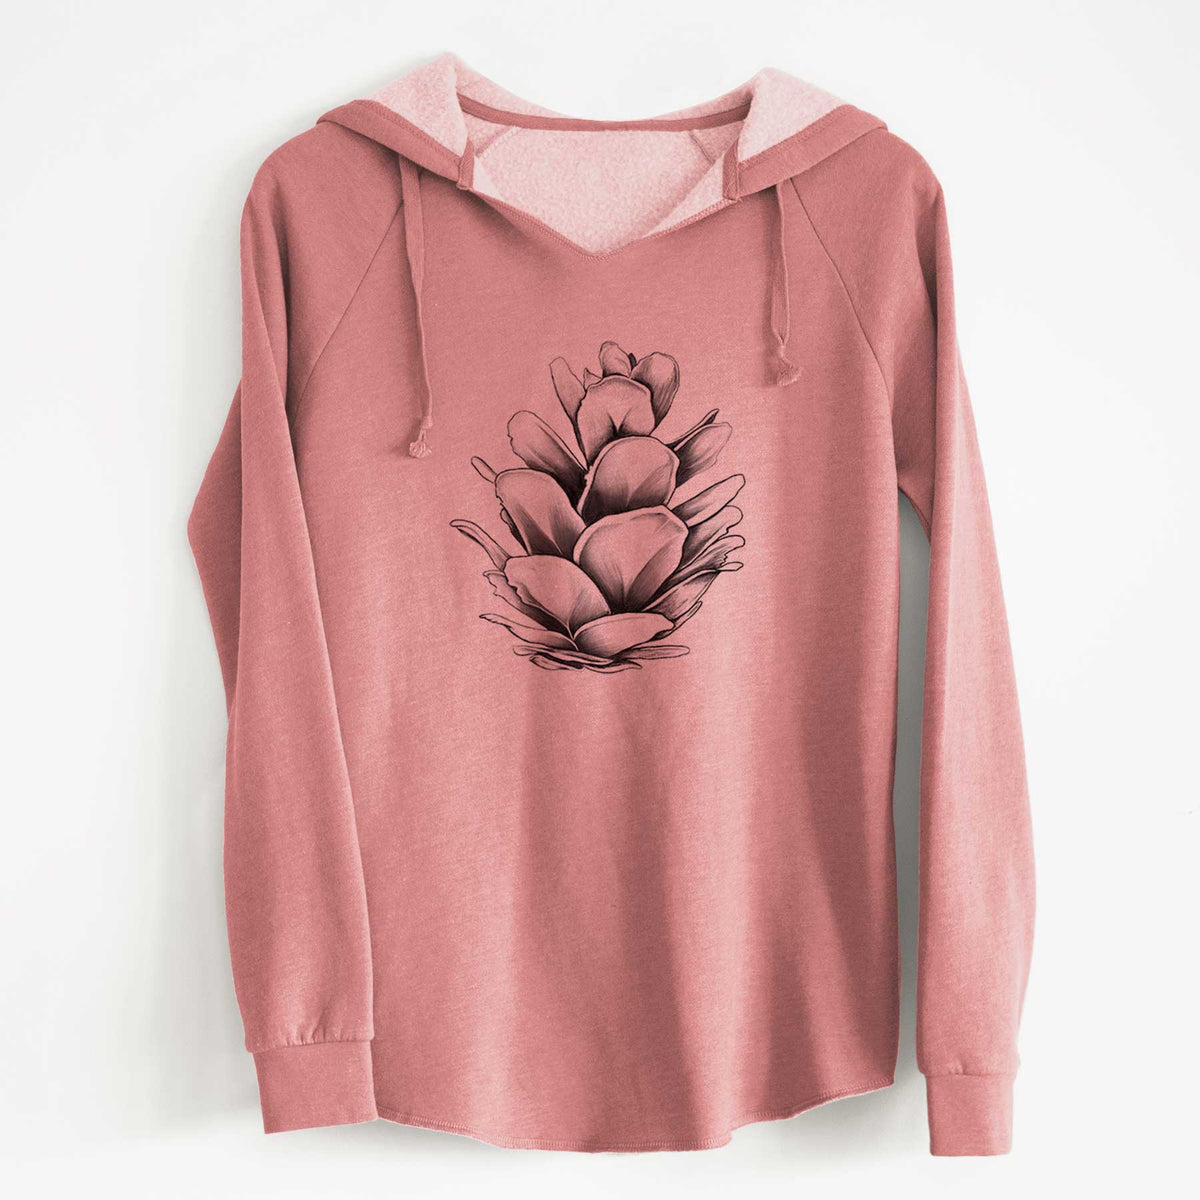 Tsuga heterophylla - Western Hemlock Pine Cone - Cali Wave Hooded Sweatshirt